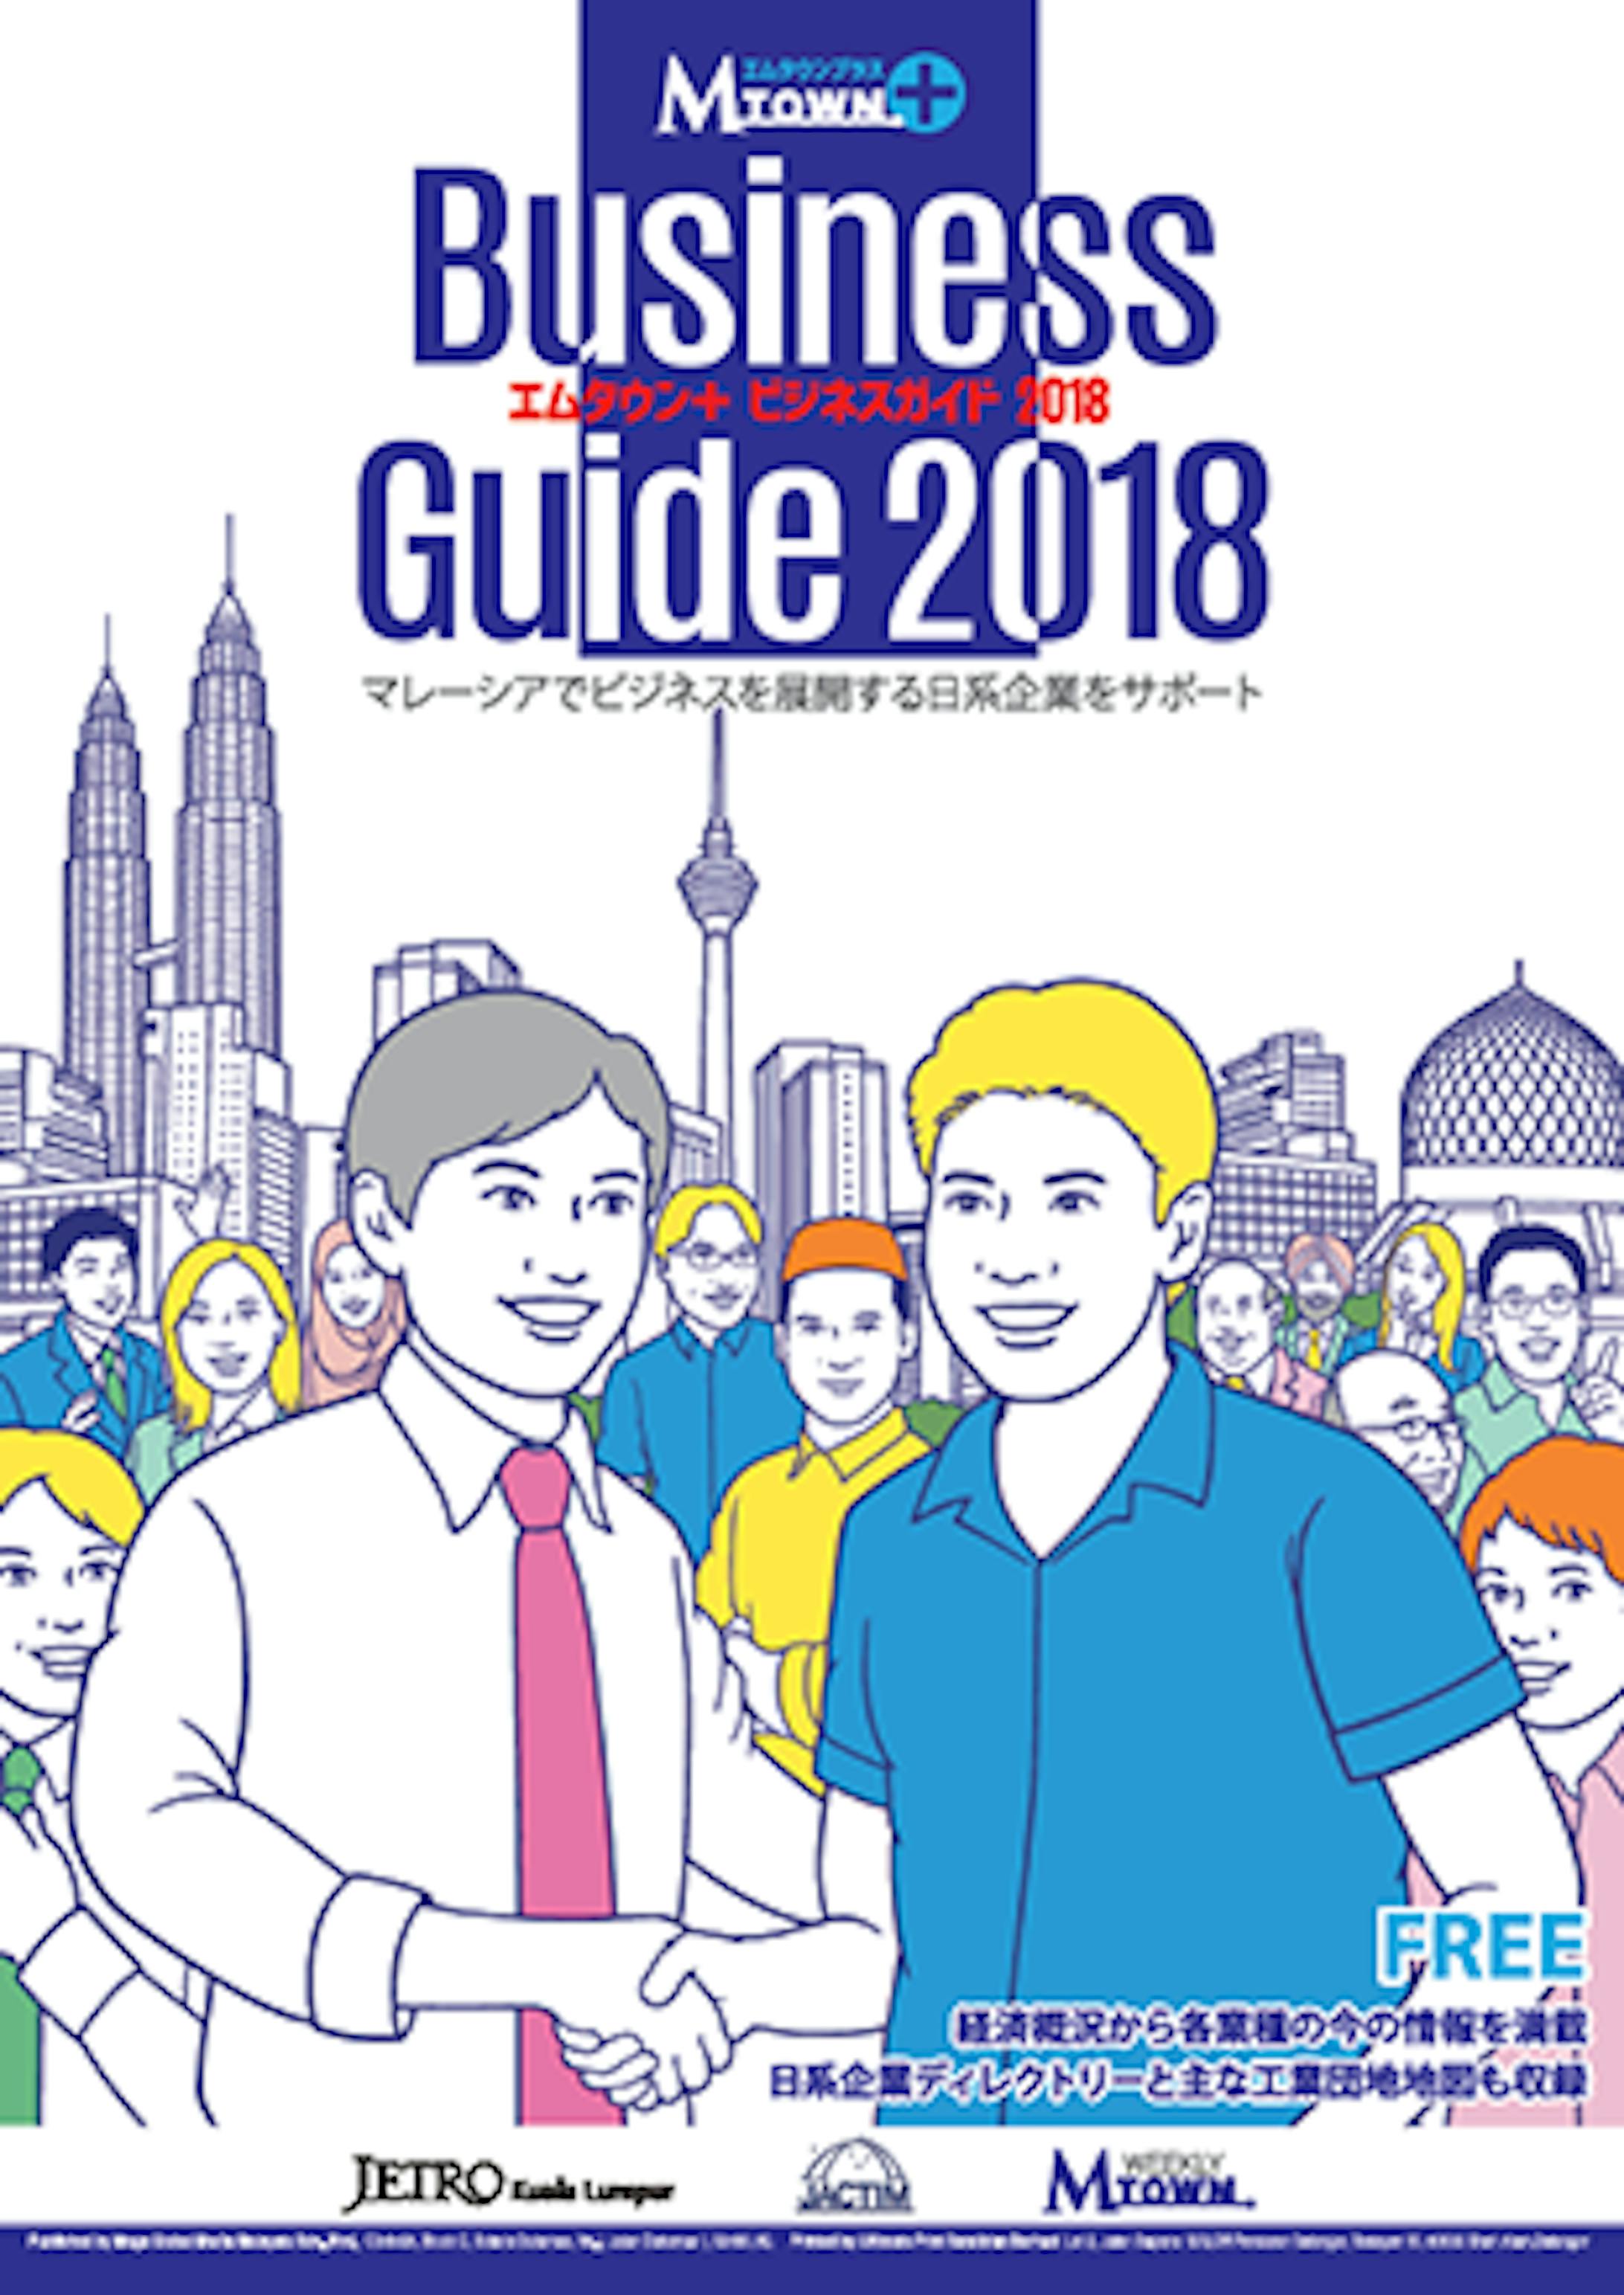 「マレーシア ビジネスガイド 2018」」「マレーシア生活ガイド 2018-1